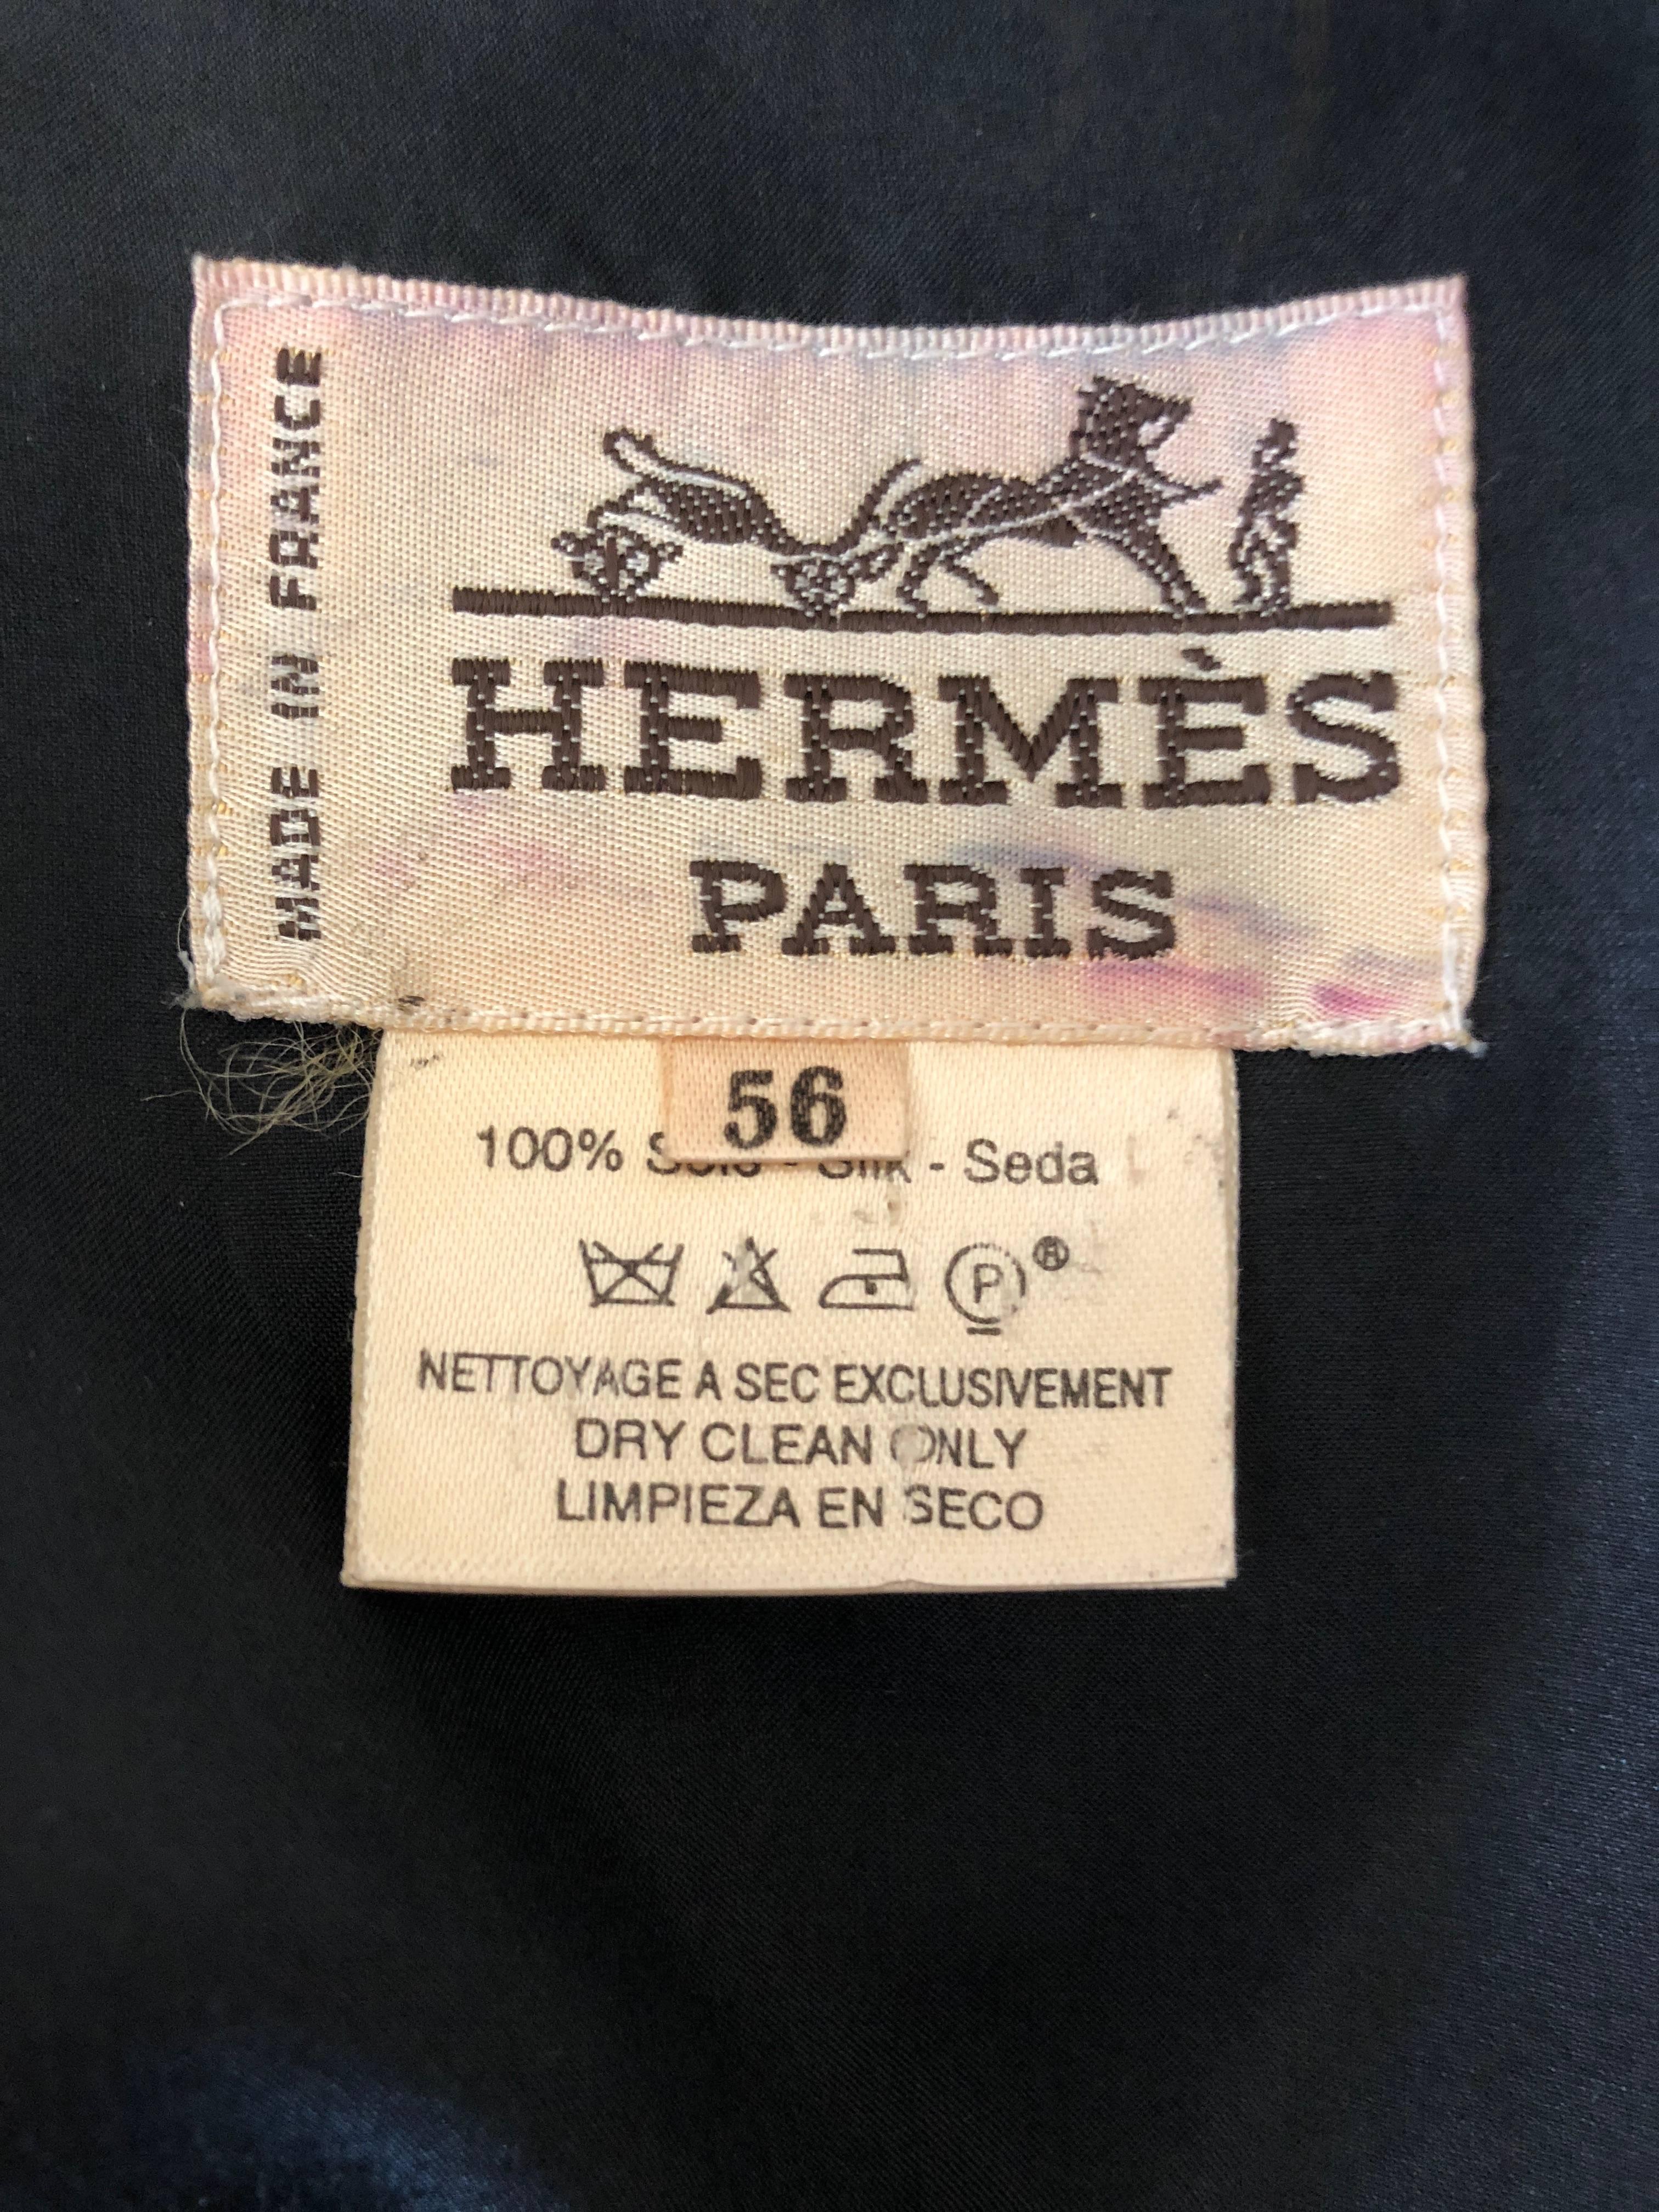 Hermes by J. Metz Men's 